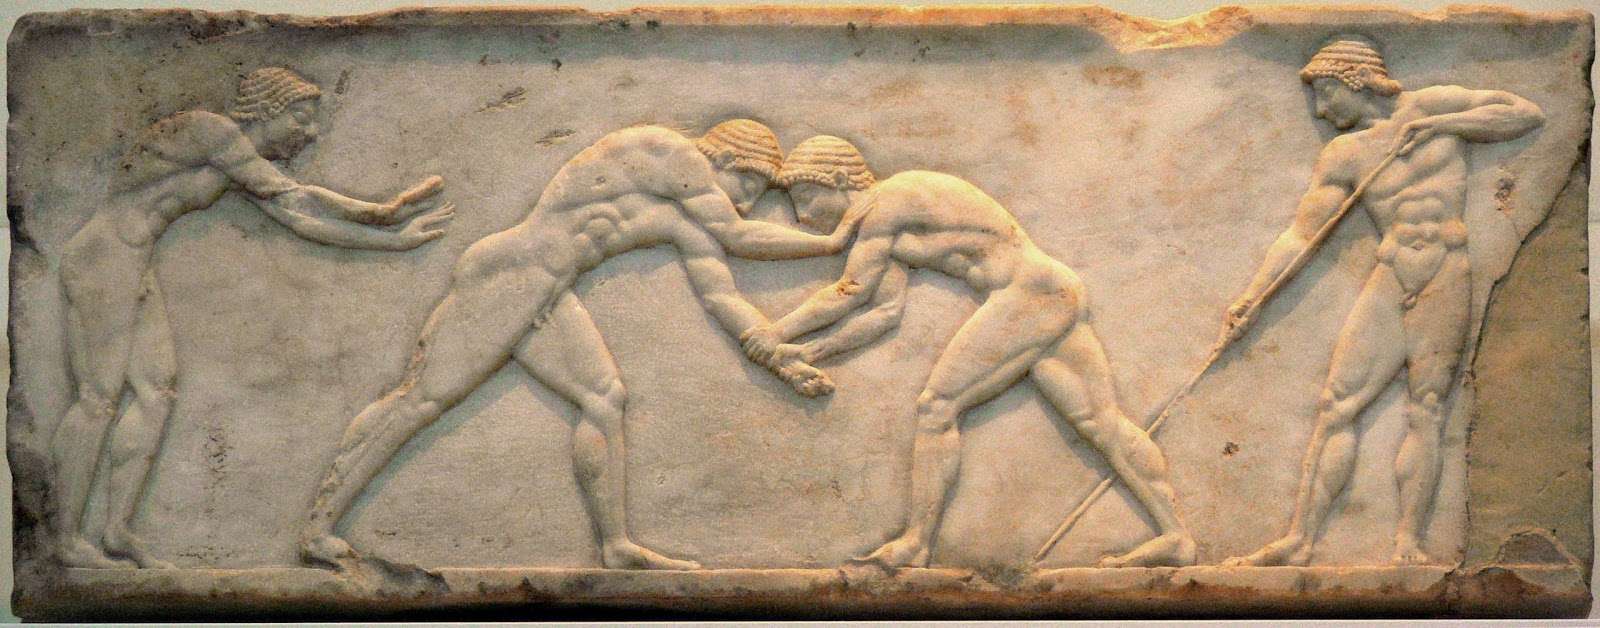 23 Ιουλίου Σαν Σήμερα: 776 π.Χ οι πρώτοι Ολυμπιακοί Αγώνες